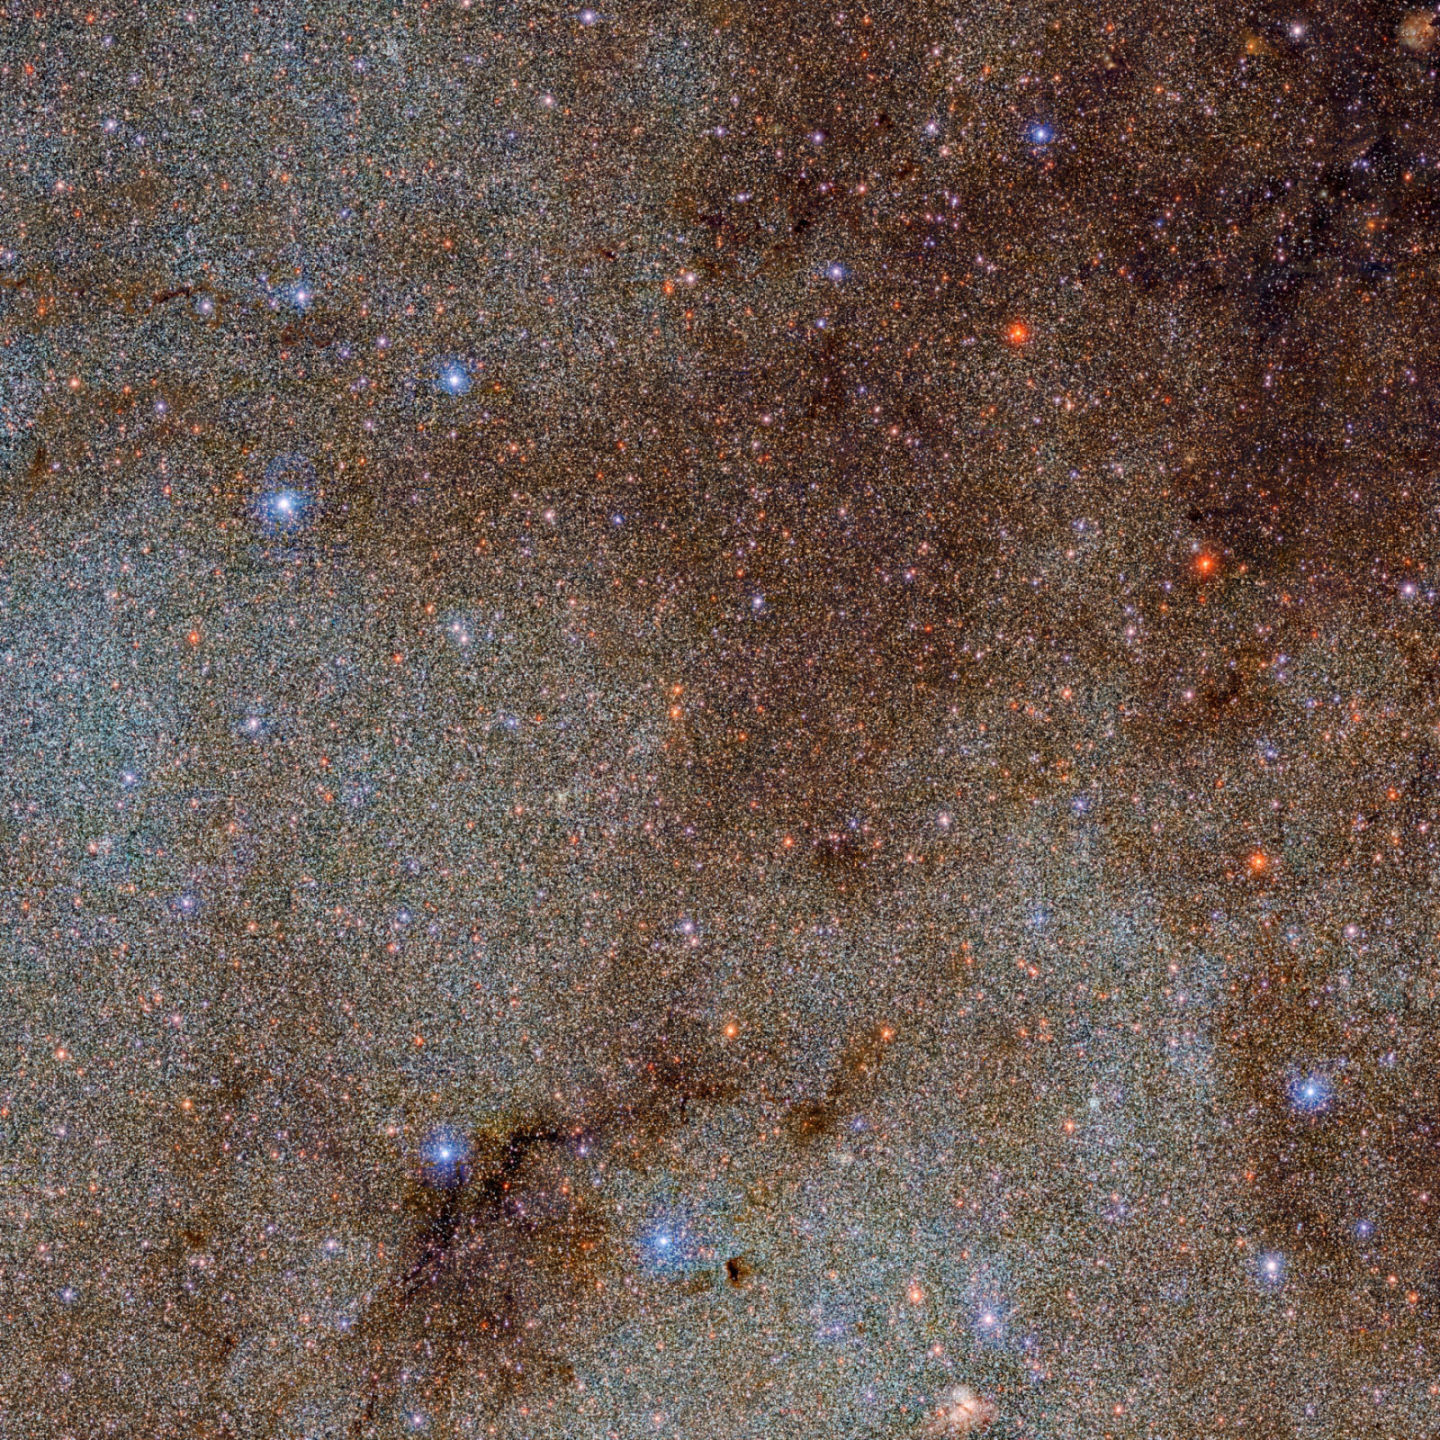 Ova slika, koja je prepuna zvijezda i tamnih oblaka prašine, tek je mali isječak novog istraživanja Mliječne staze (©DECaPS2, DOE, FNAL, DECam, CTIO, NOIRLab, NSF, AURA, E. Slawik, M. Zamani, D. de Martin).